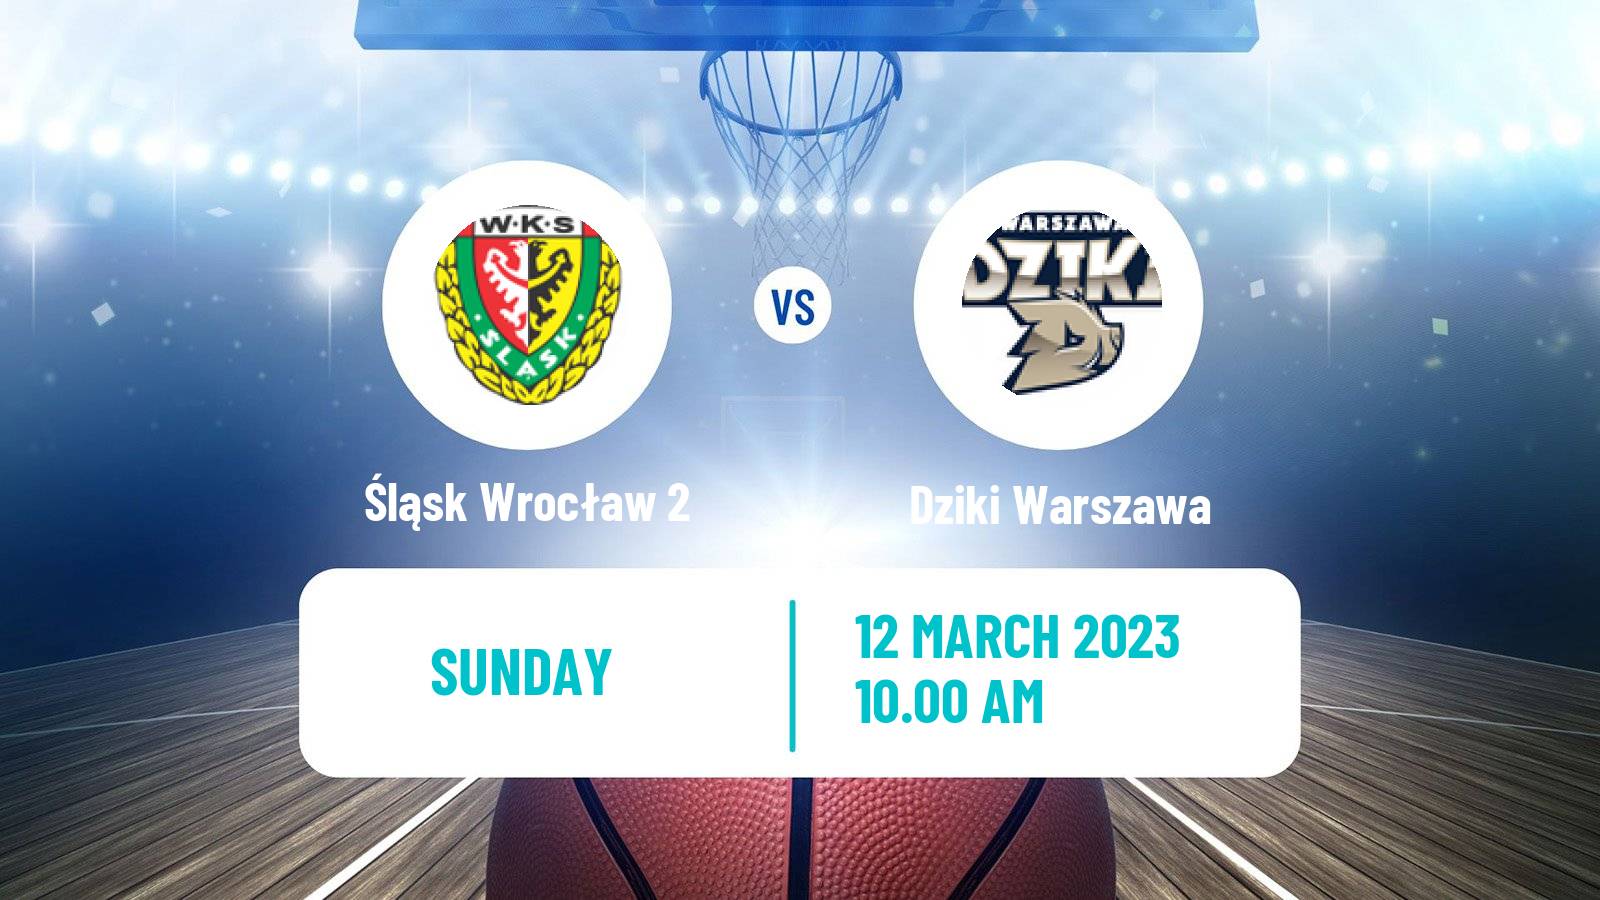 Basketball Polish 1 Liga Basketball Śląsk Wrocław 2 - Dziki Warszawa